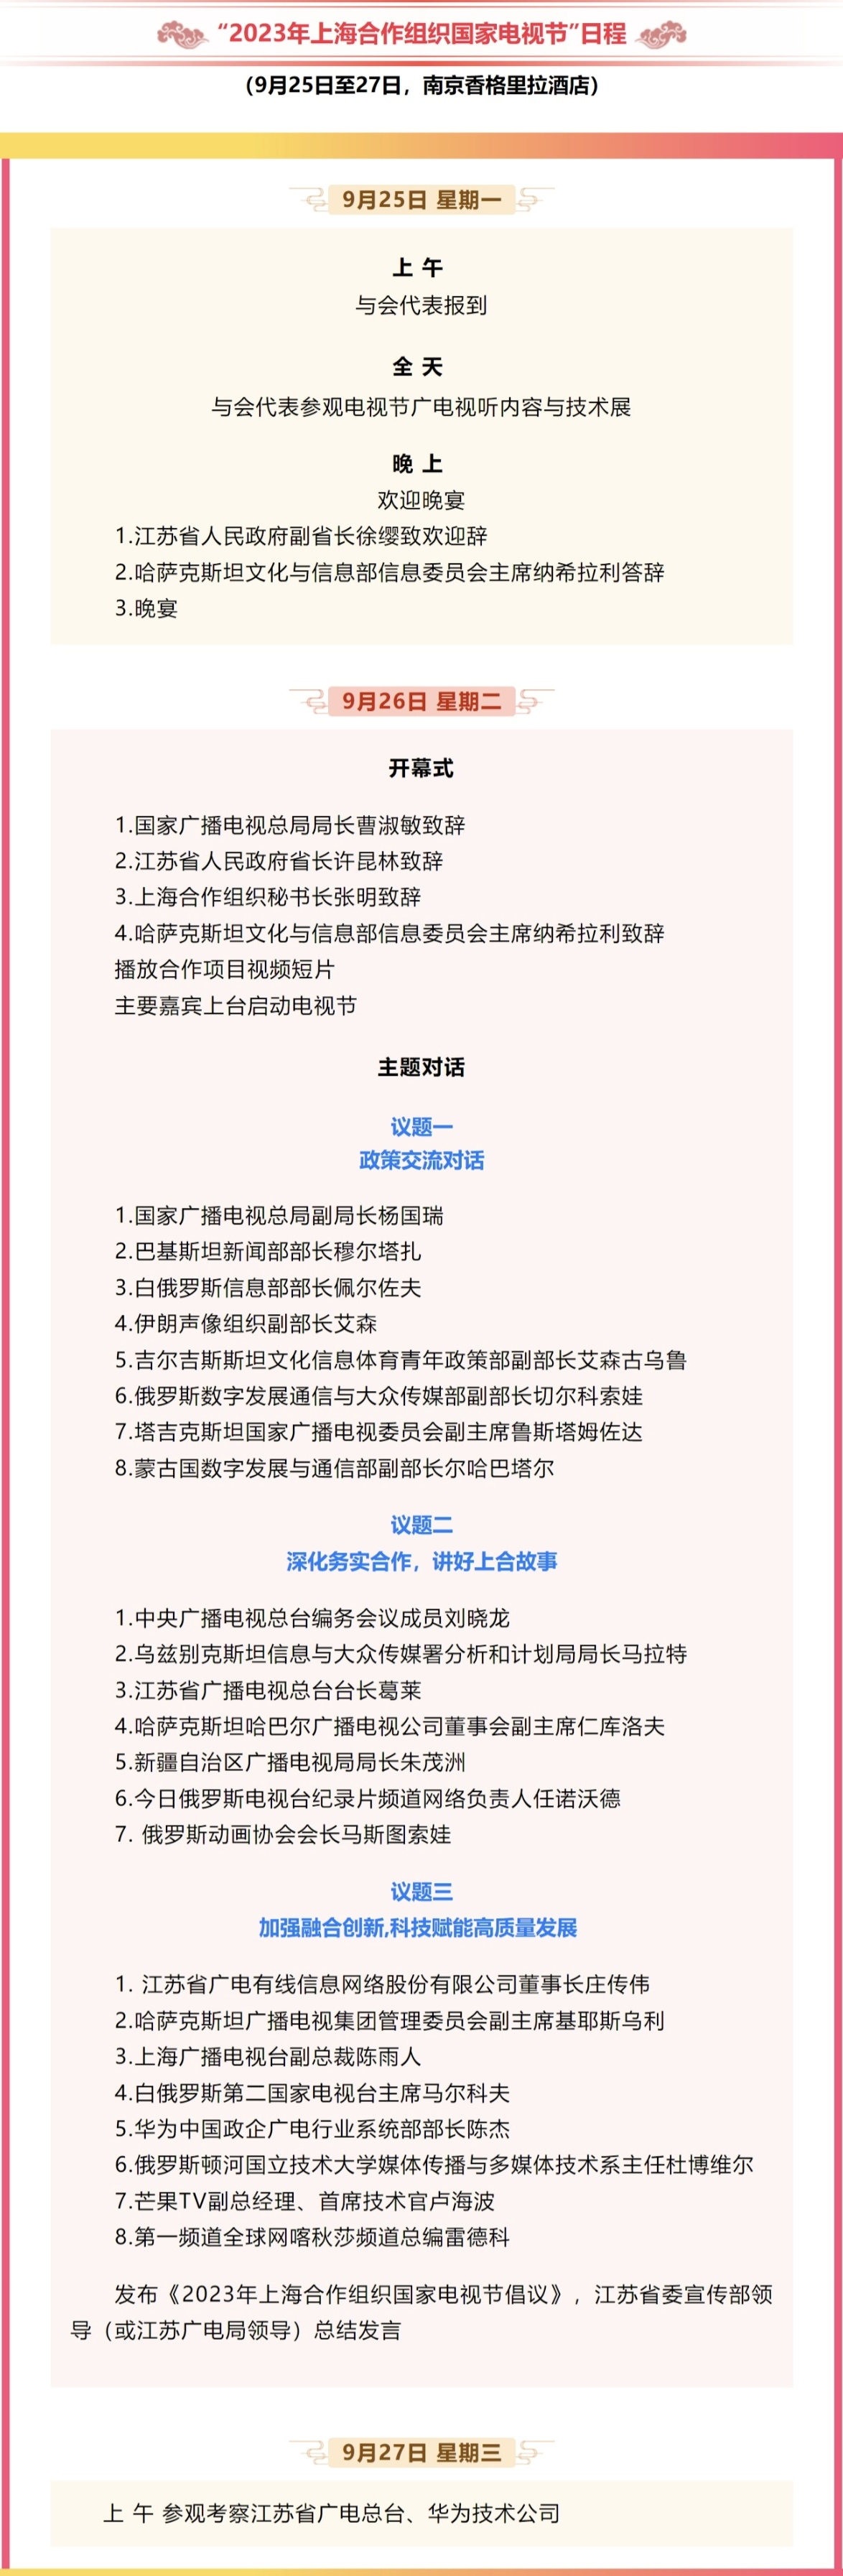 【报道】2023上海合作组织国家电视节即将在南京举办2.jpg